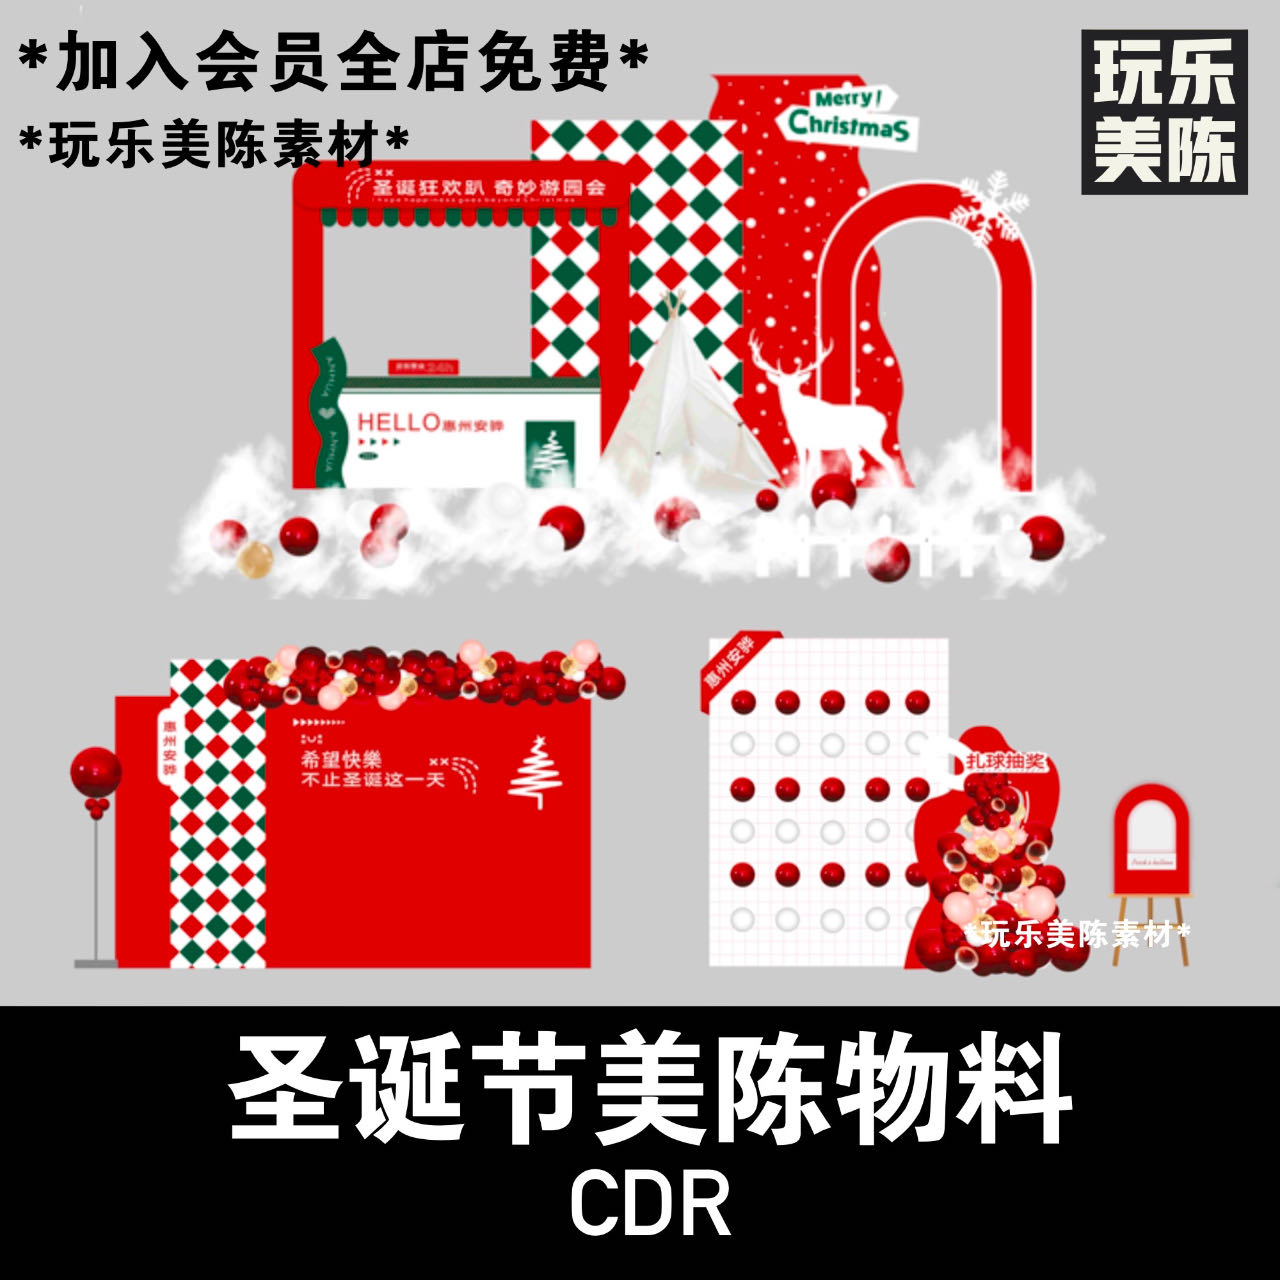 圣诞节简约格子活动氛围布置美陈迎宾摊位红包墙打卡CDR矢量素材